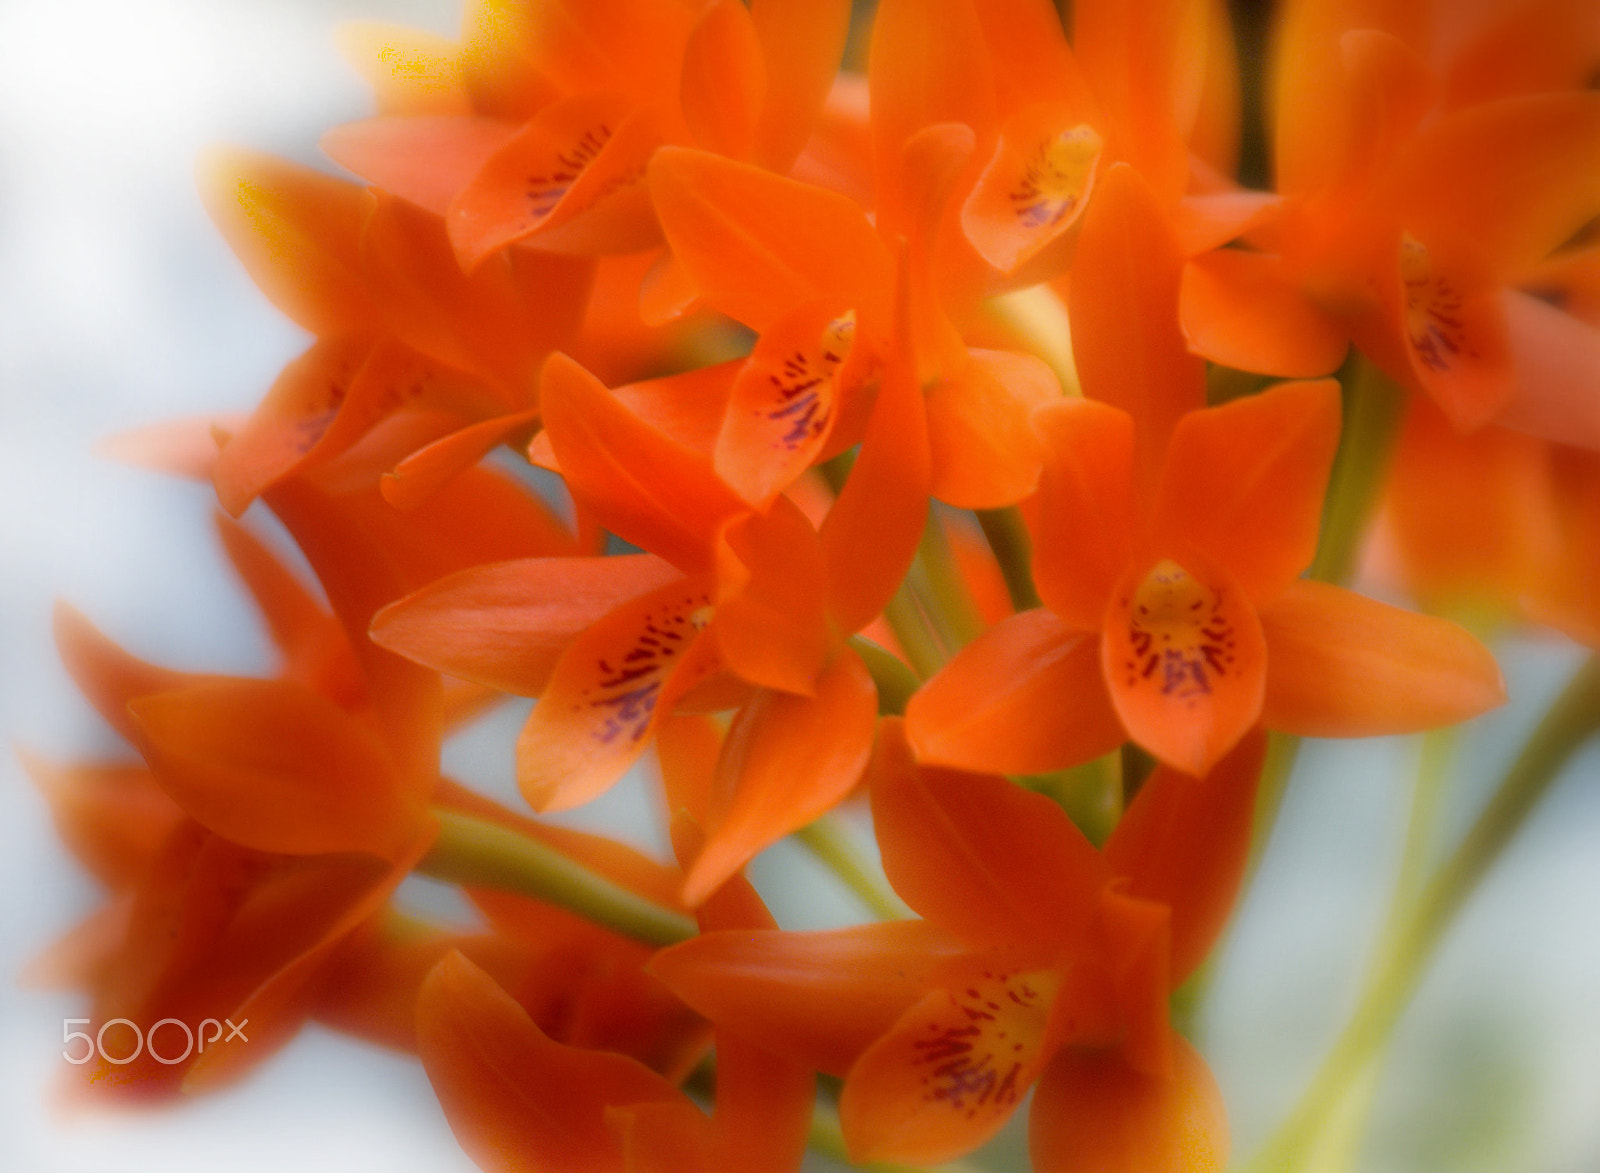 Nikon D3000 + Nikon AF-S DX Nikkor 55-200mm F4-5.6G ED sample photo. Orange orchid flowers photography